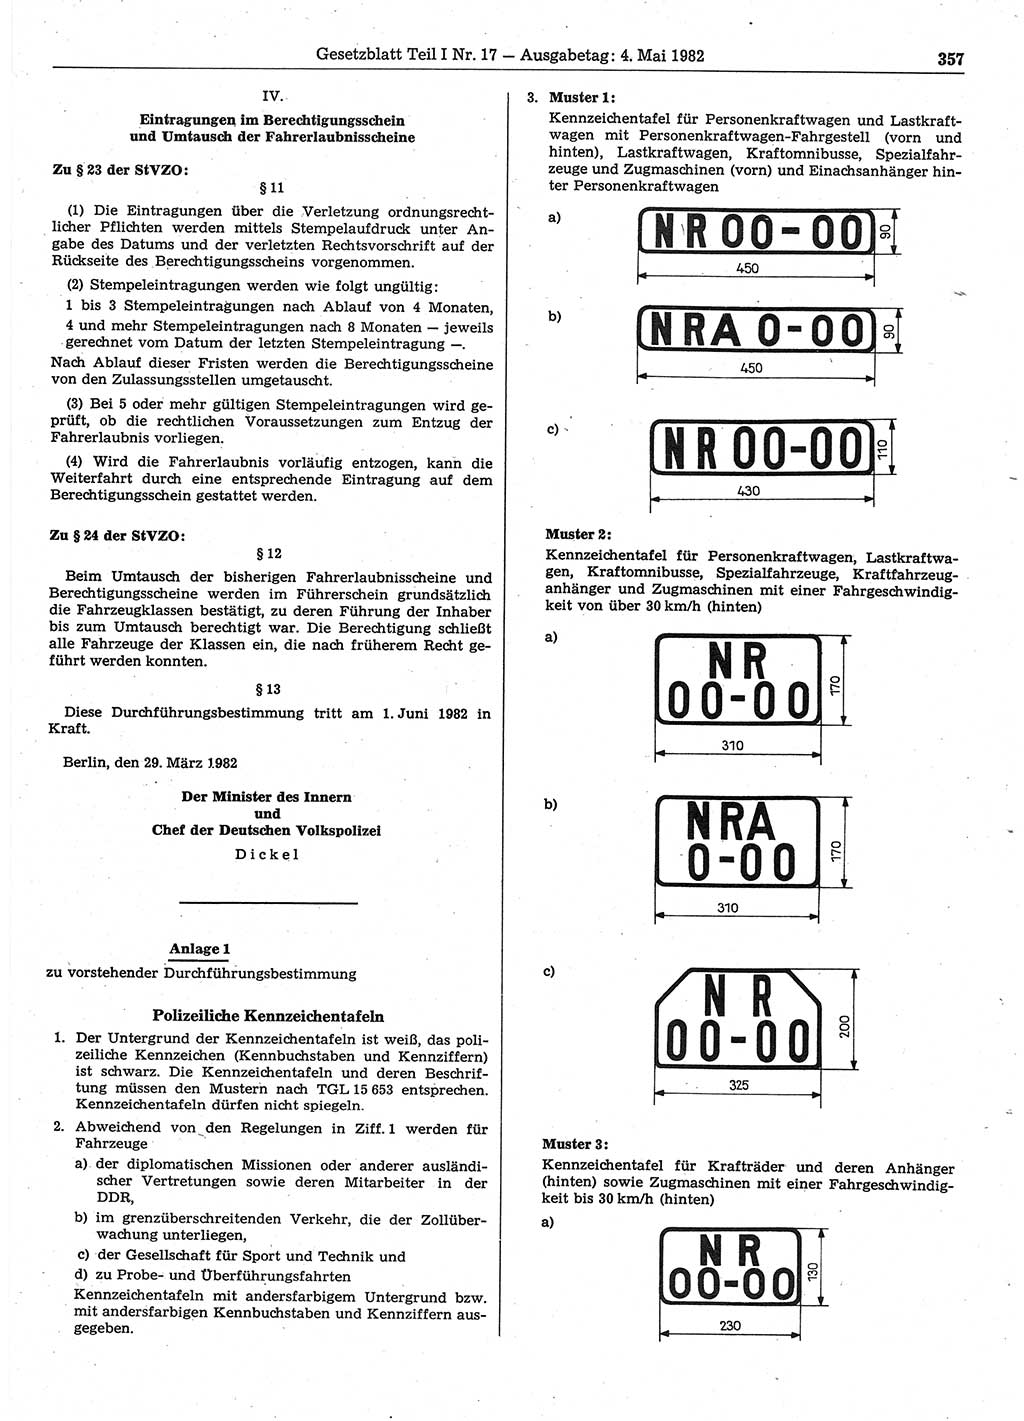 Gesetzblatt (GBl.) der Deutschen Demokratischen Republik (DDR) Teil Ⅰ 1982, Seite 357 (GBl. DDR Ⅰ 1982, S. 357)